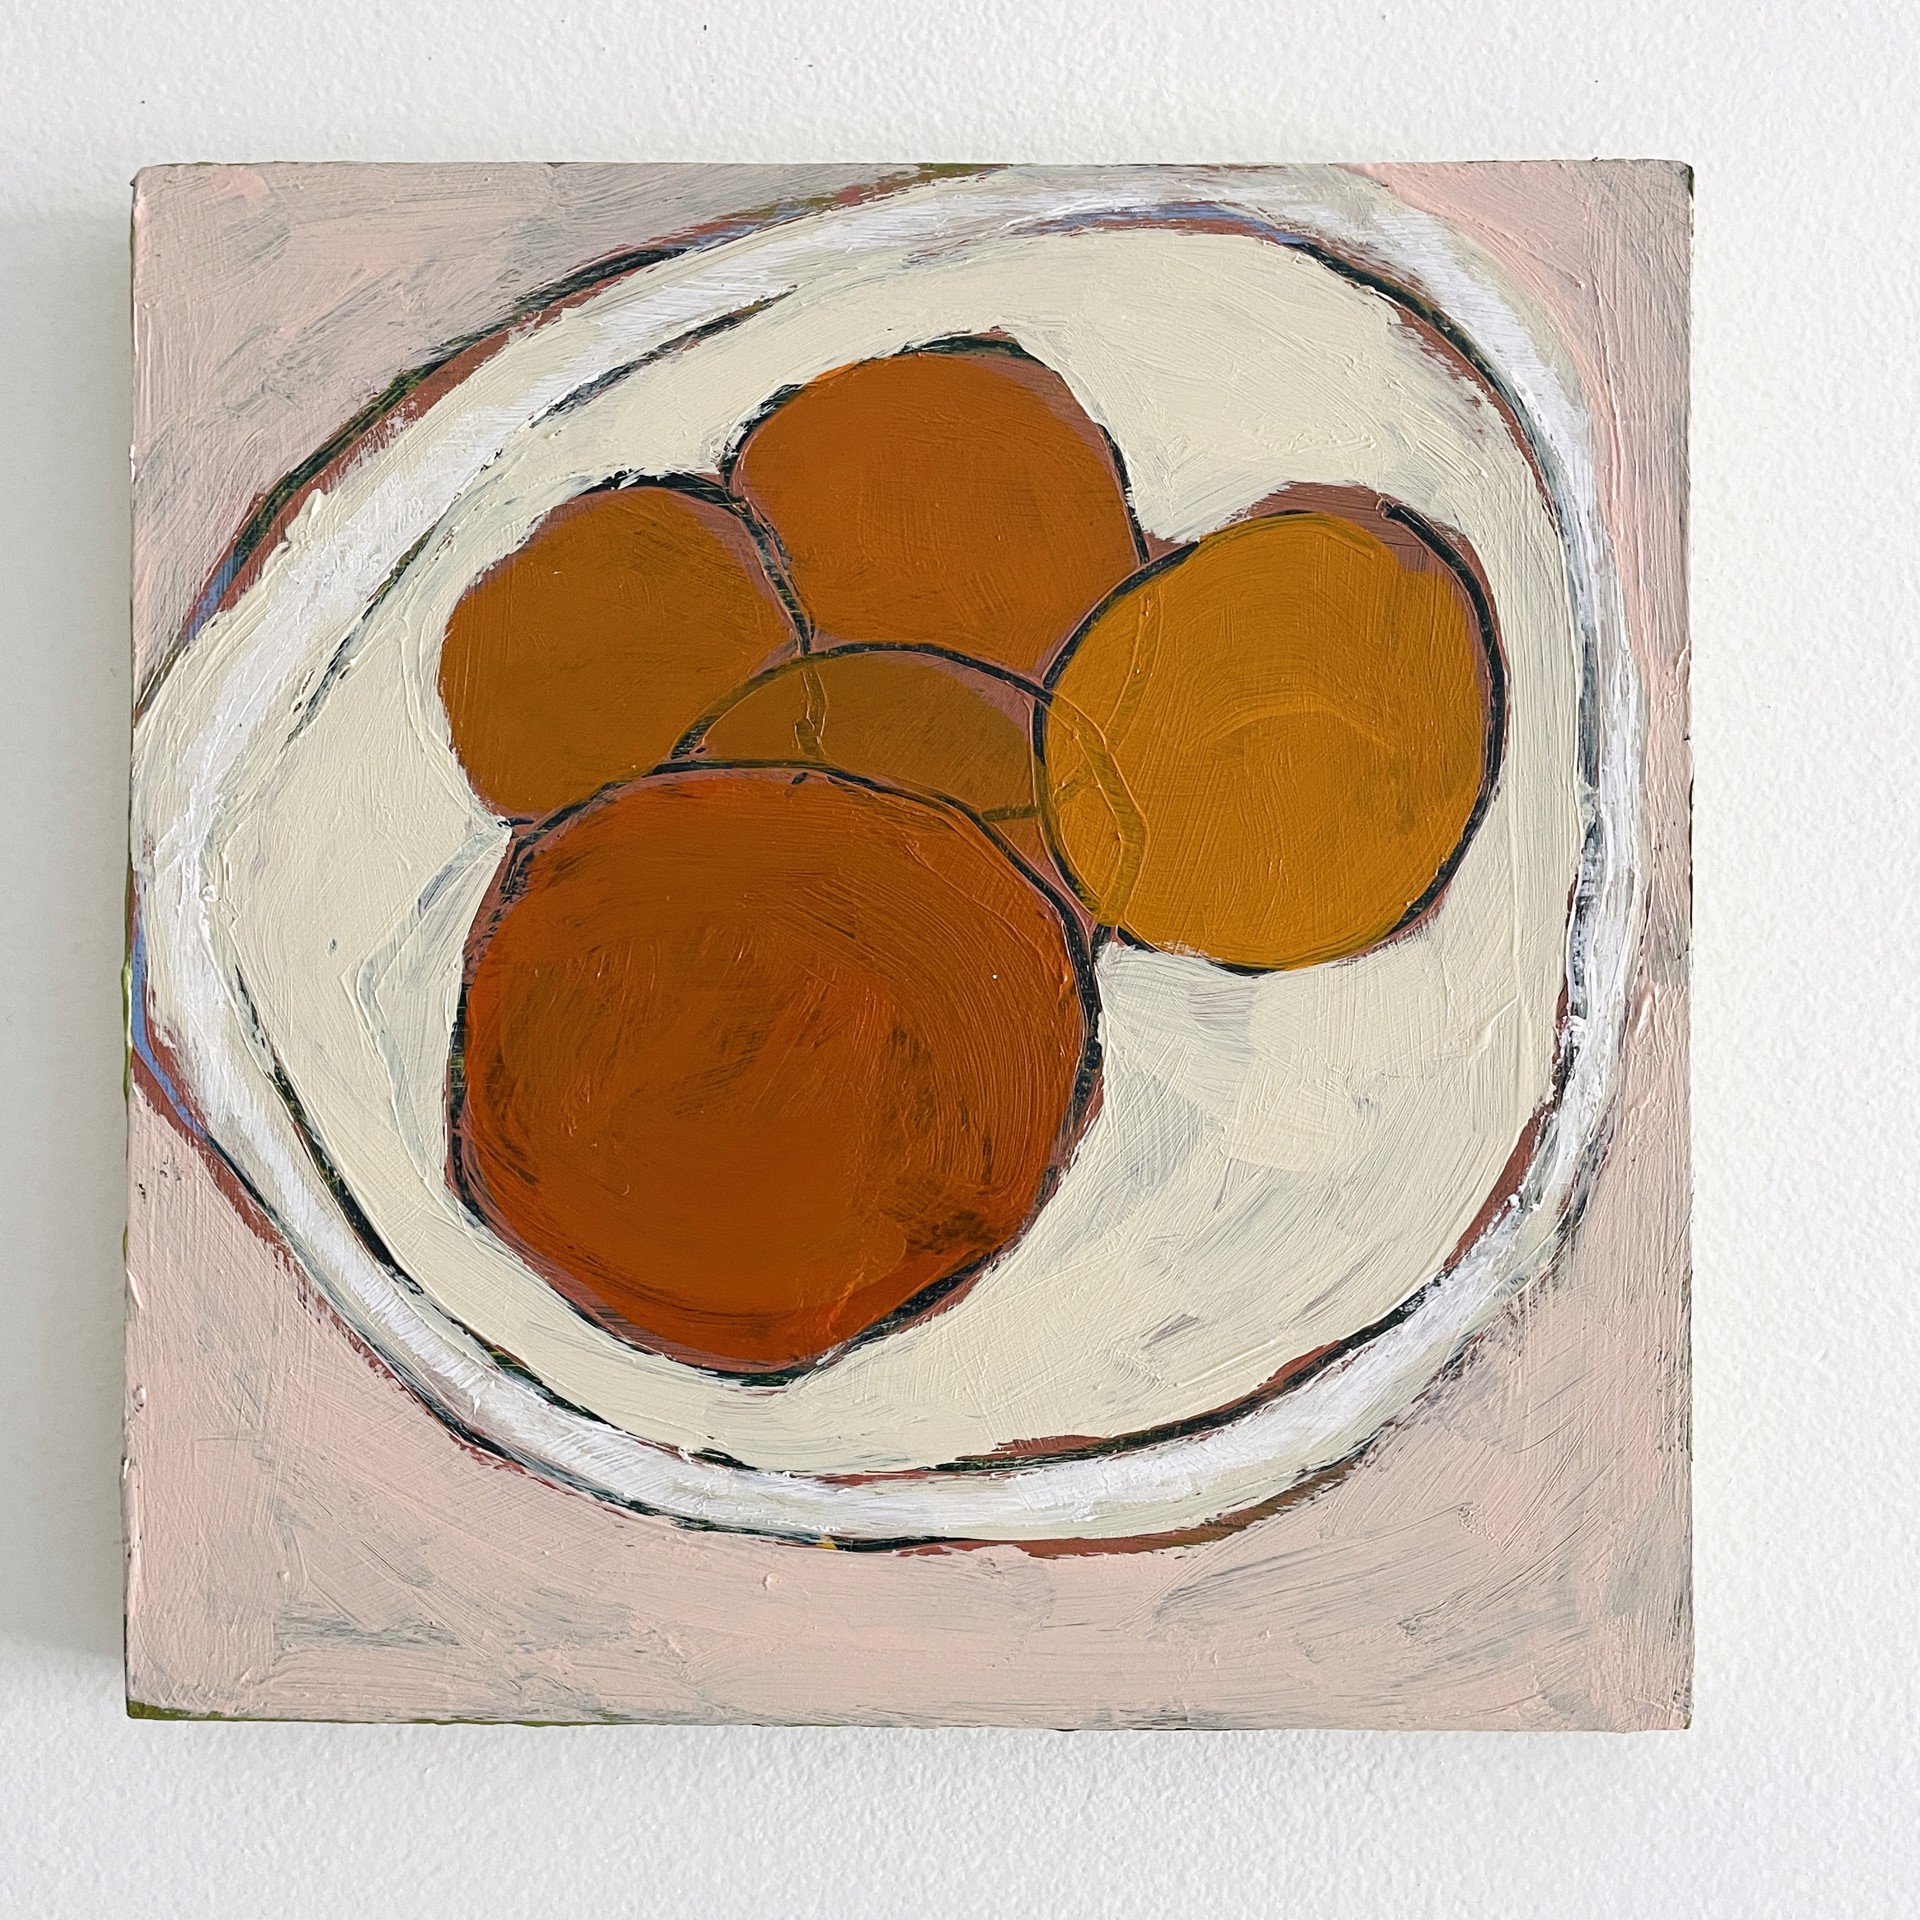 Five Oranges on White Plate by Rachael Van Dyke